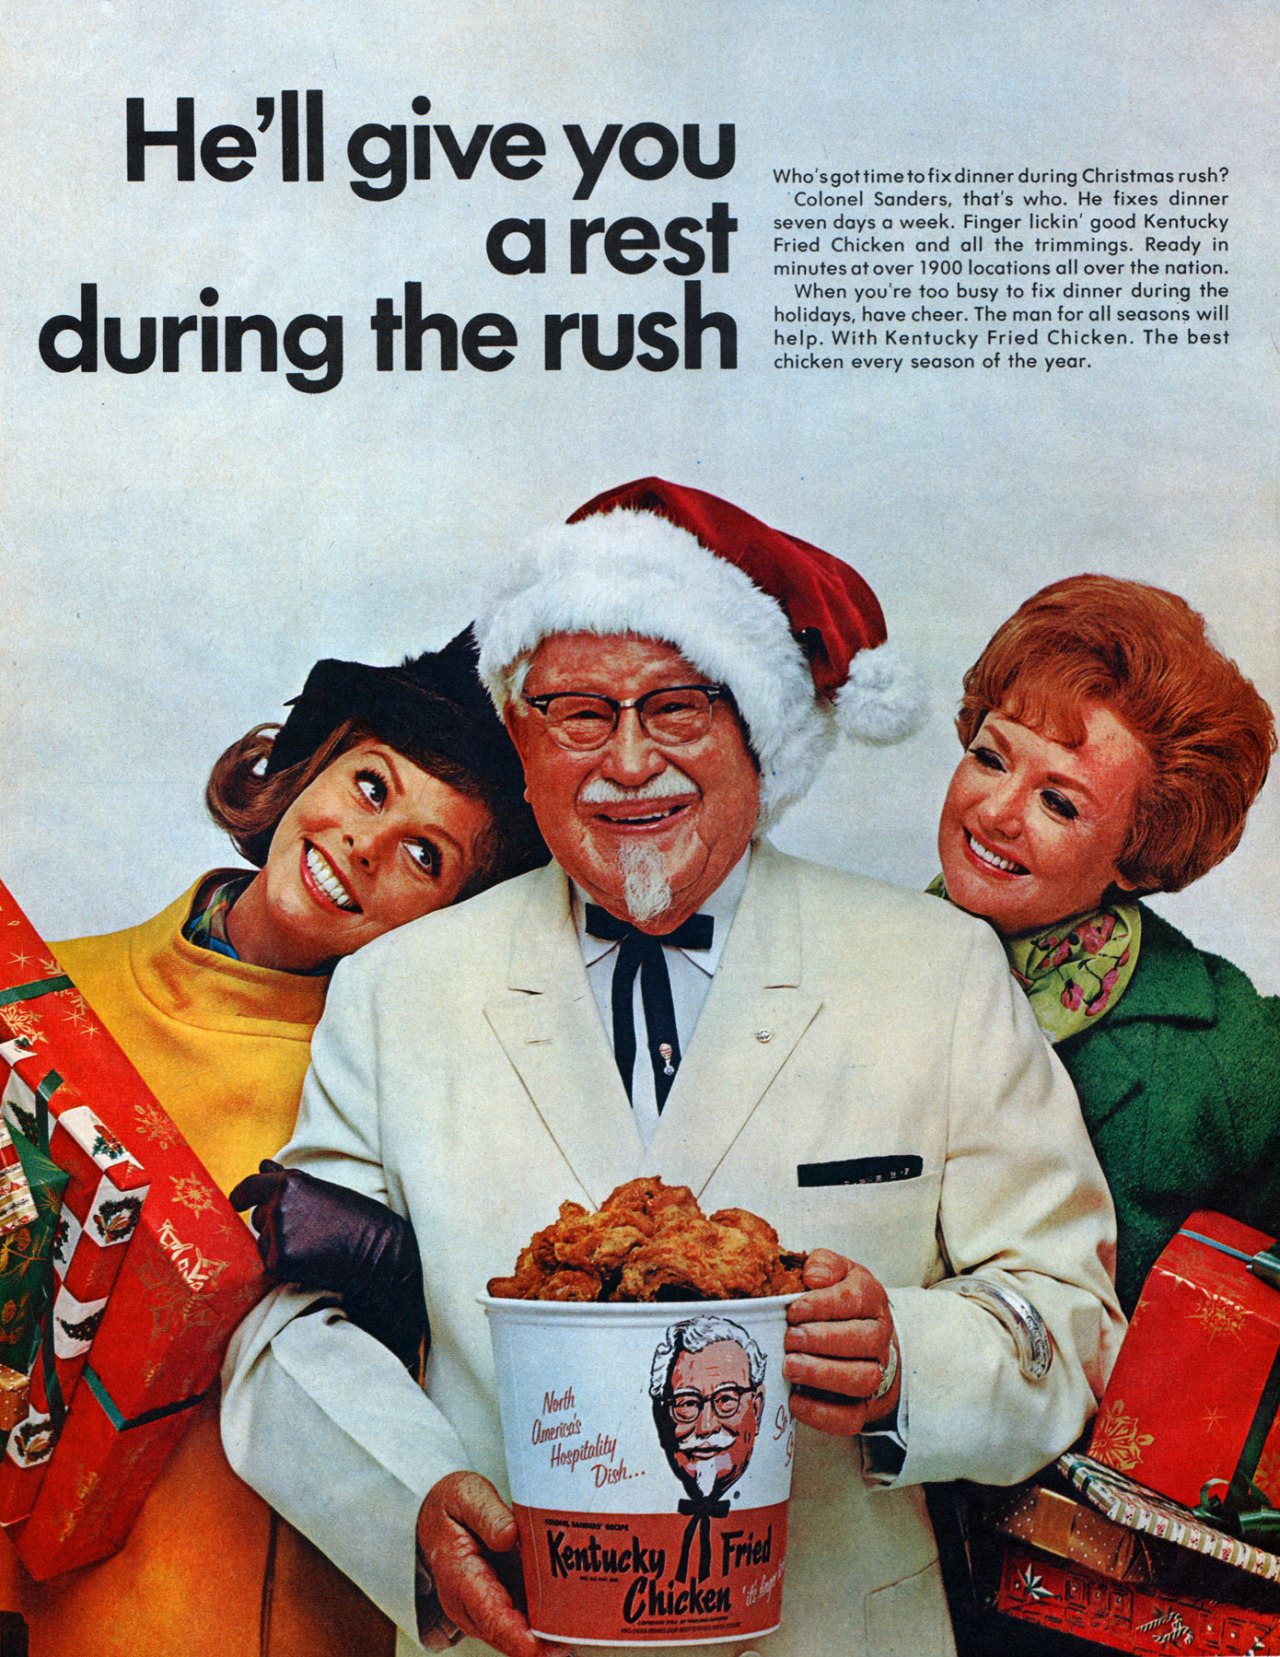 Kentucky Fried Chicken - 1968